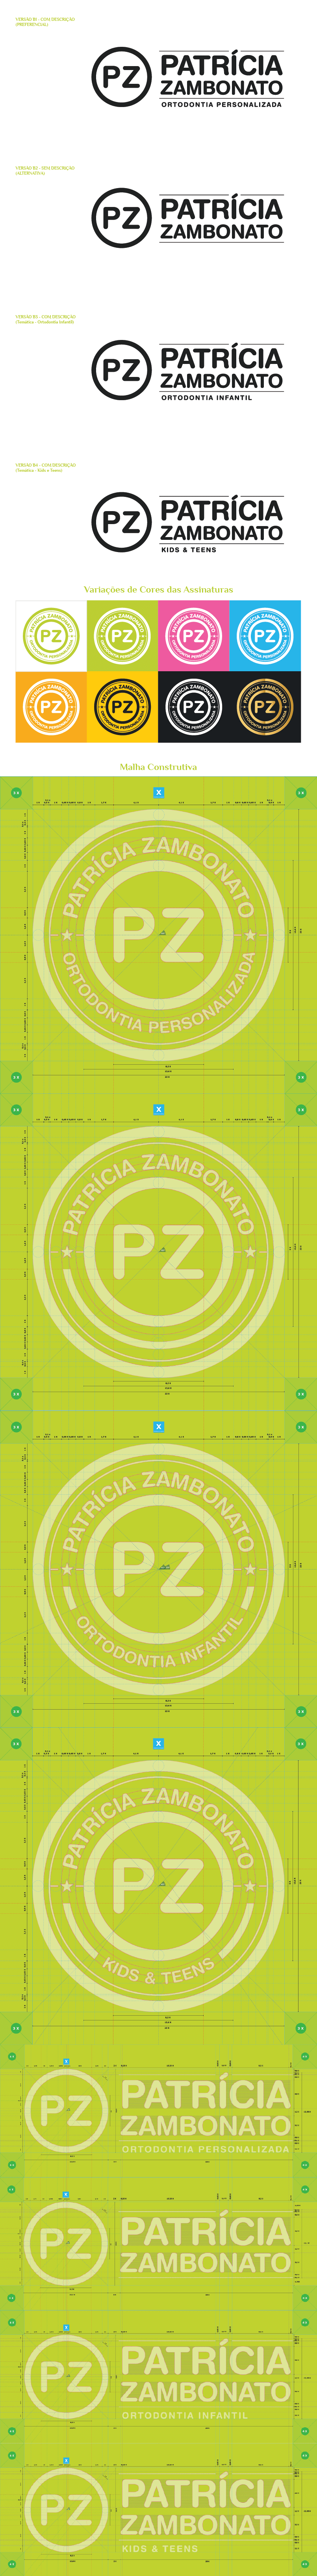 apresentacao-marca-patricia-zambonato-pz-2